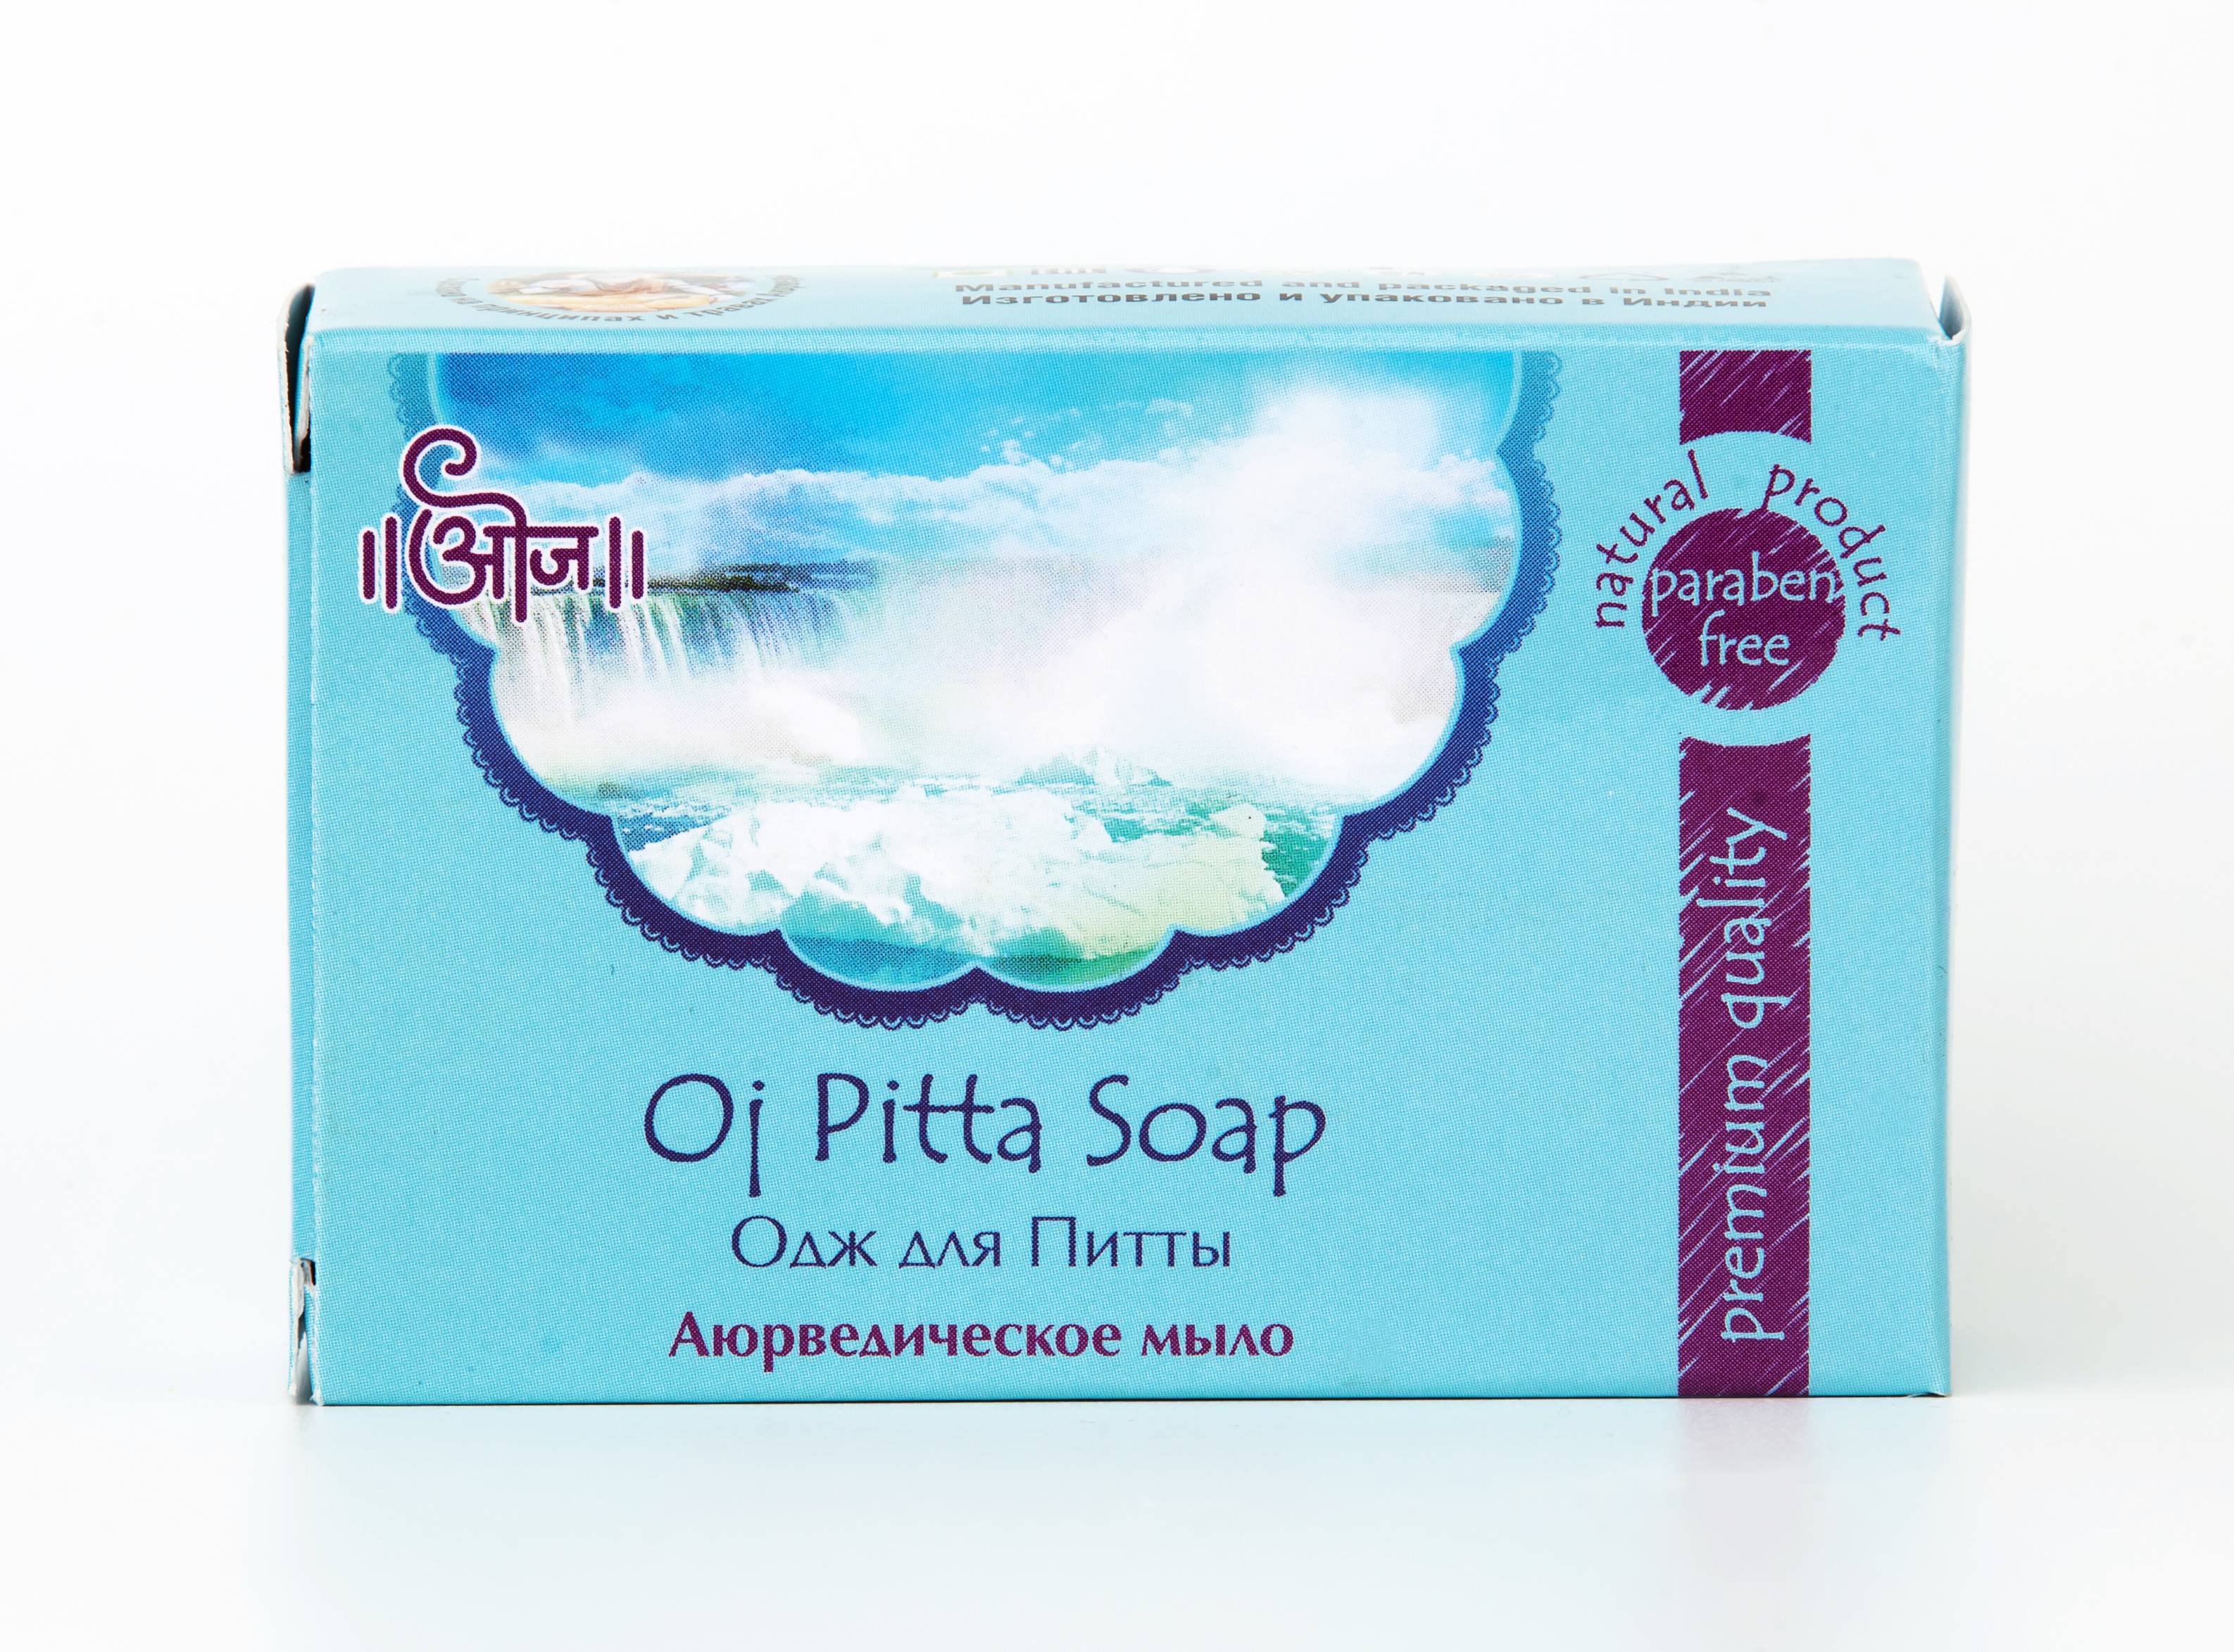 Аюрведическое мыло Одж для Питты, обогащенное аюрведическими маслами 100гр (Oj Pitta Soap)